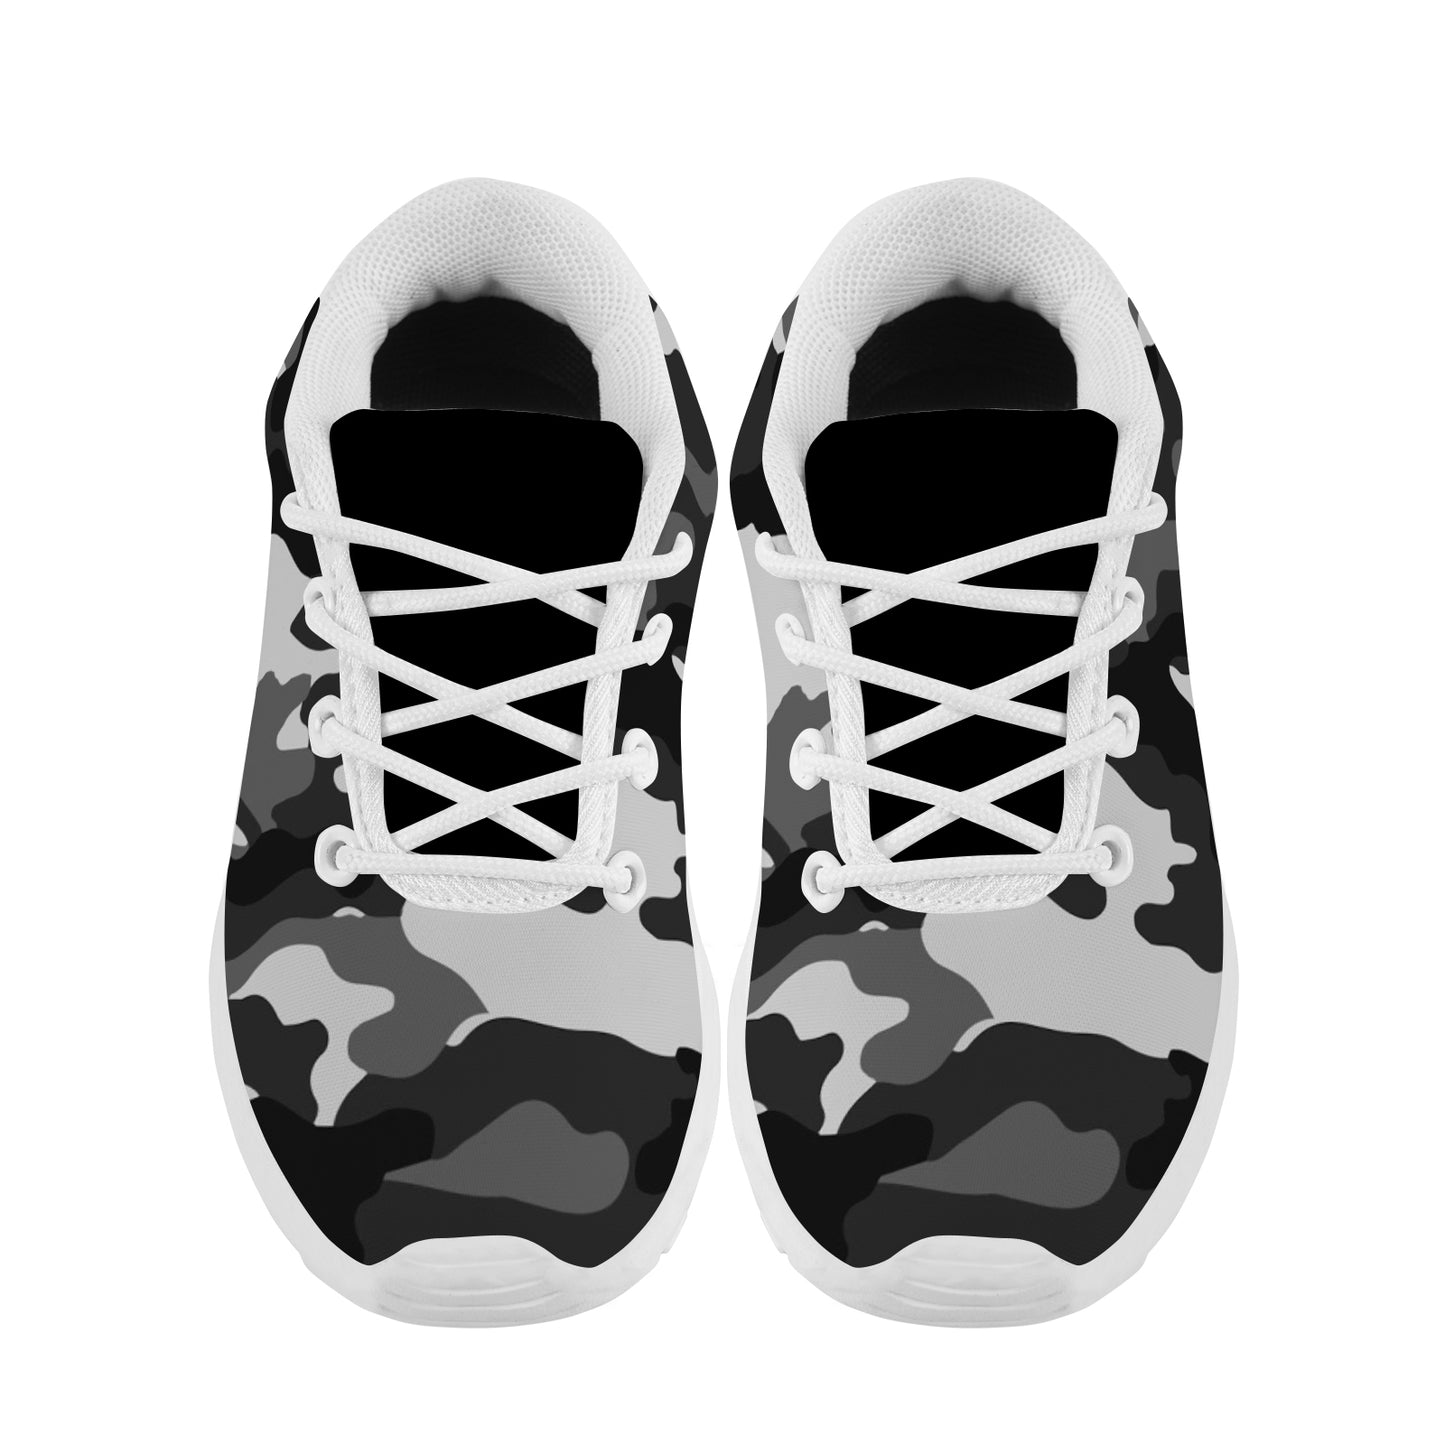 Kid's Sneakers - Black/Grey Camoflauge